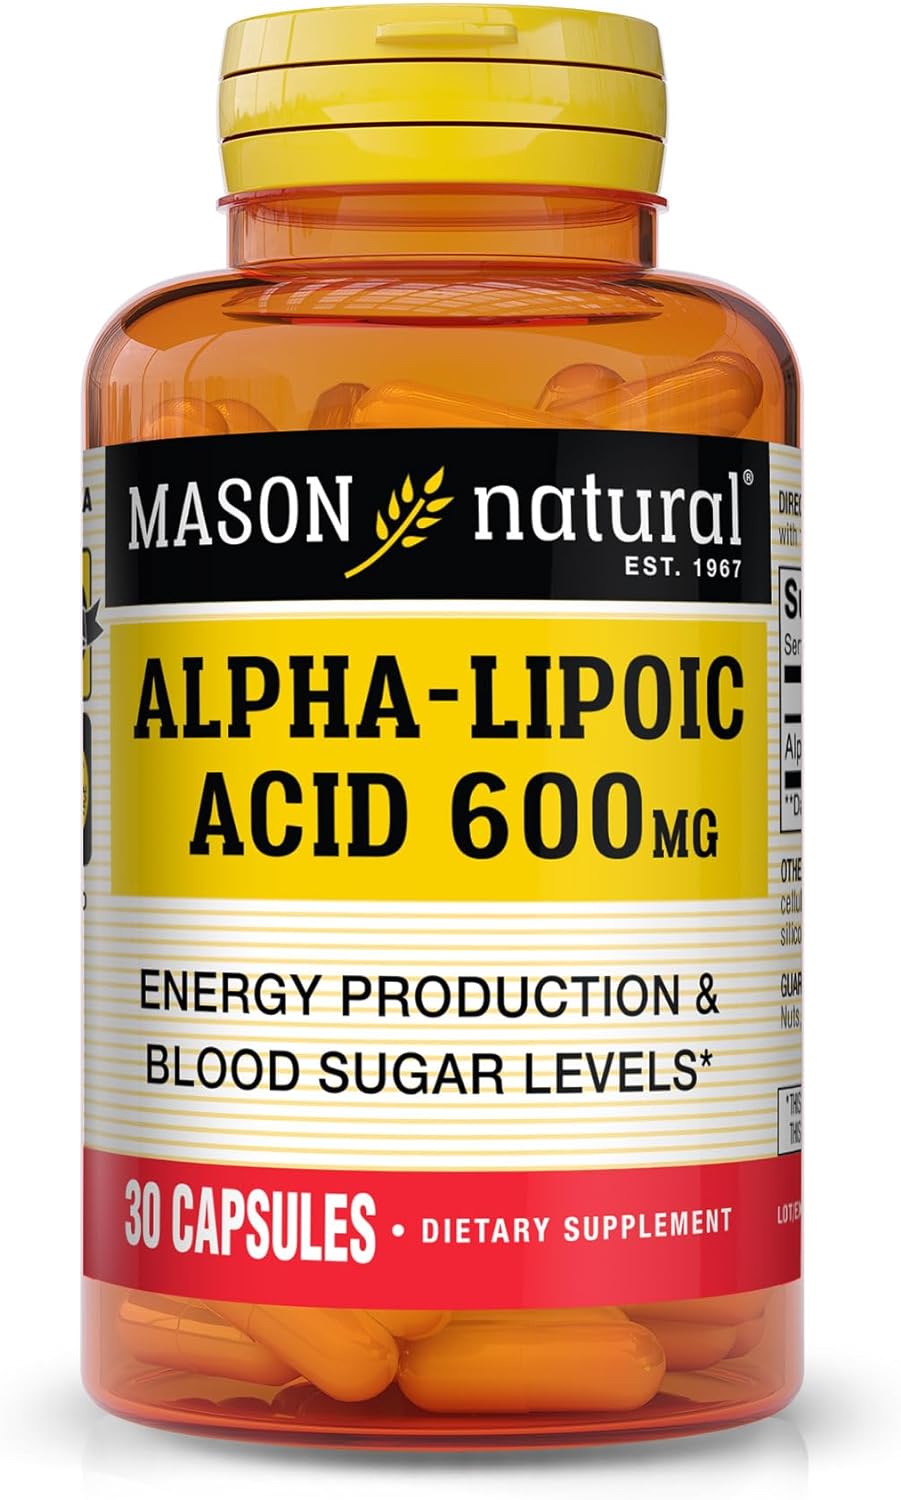 MASON NATURAL Alpha Lipoic Acid 600MG Capsules